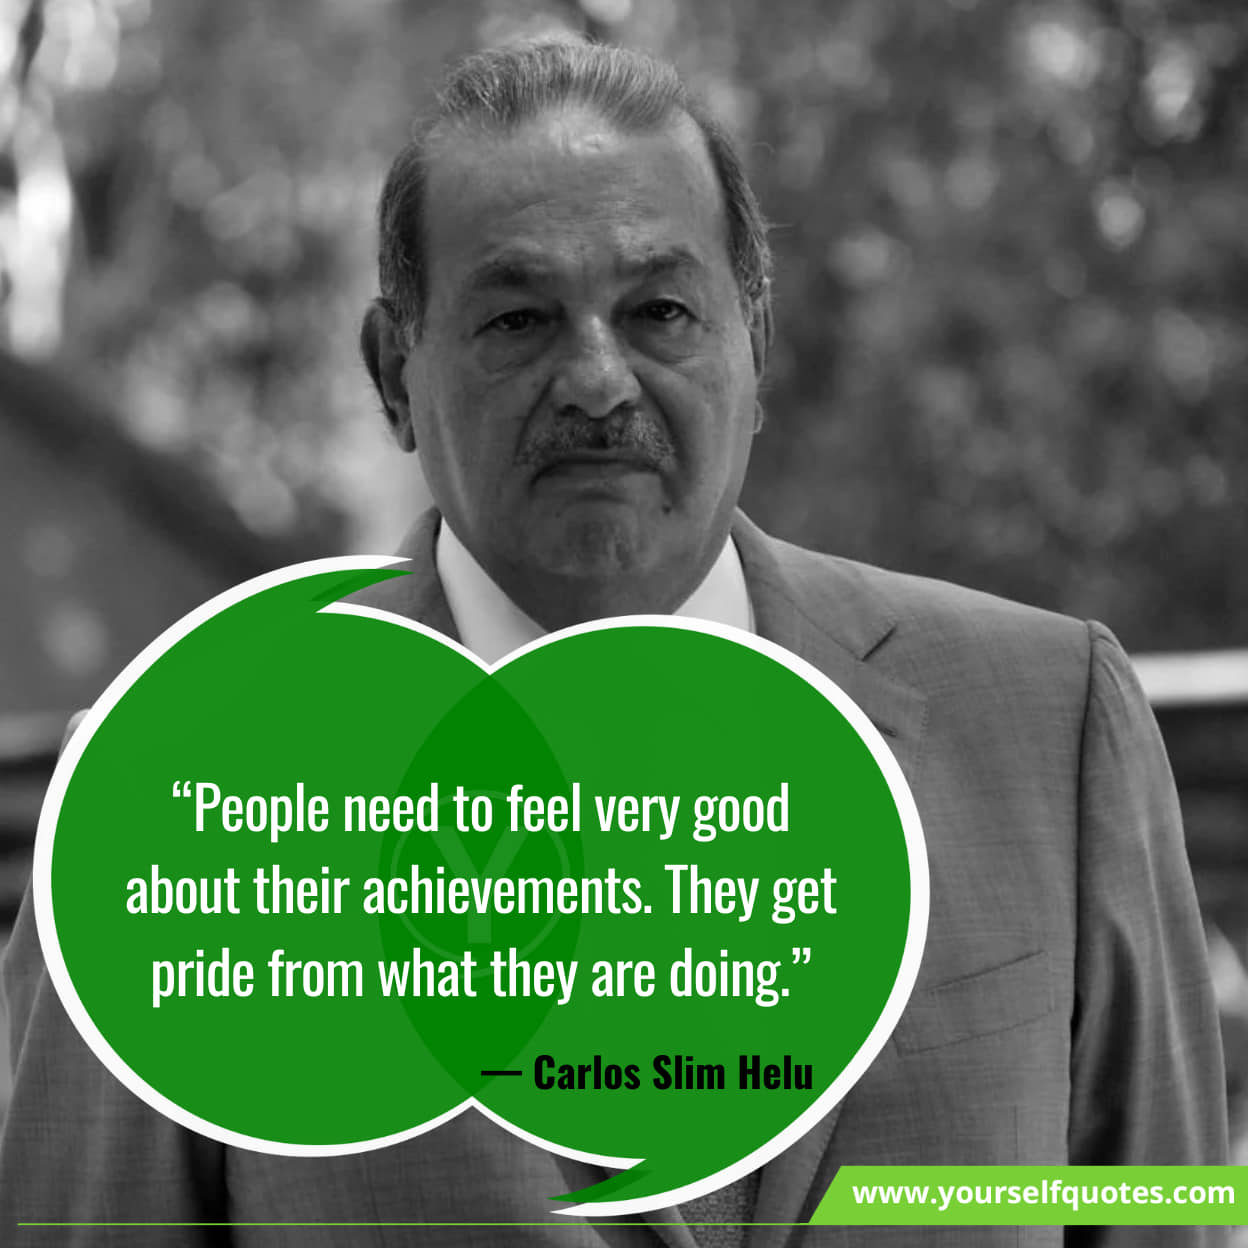 Inspiring Best Carlos Slim Helu Quotes